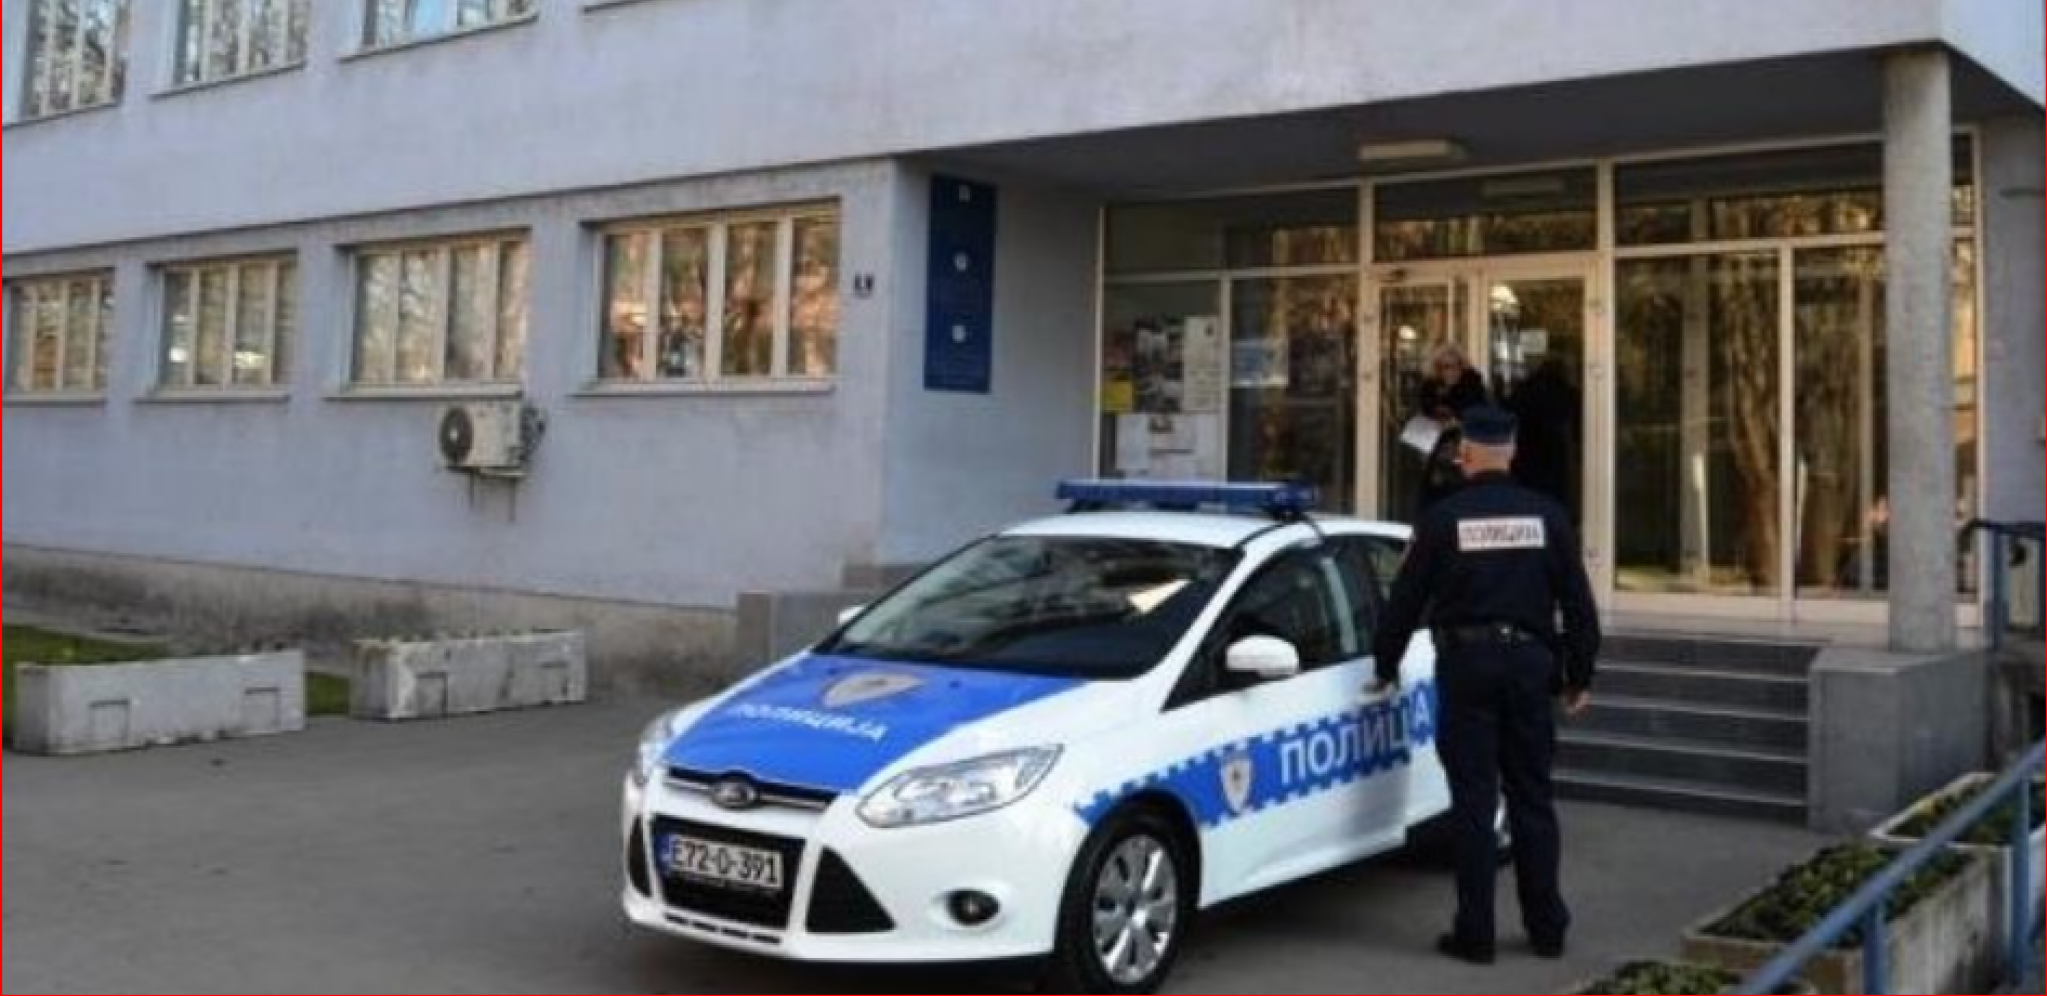 TALAČKA KRIZA U MESARI Sudski policajci došli da uhapse vlasnika i ostali zarobljeni u objektu kod Ruda